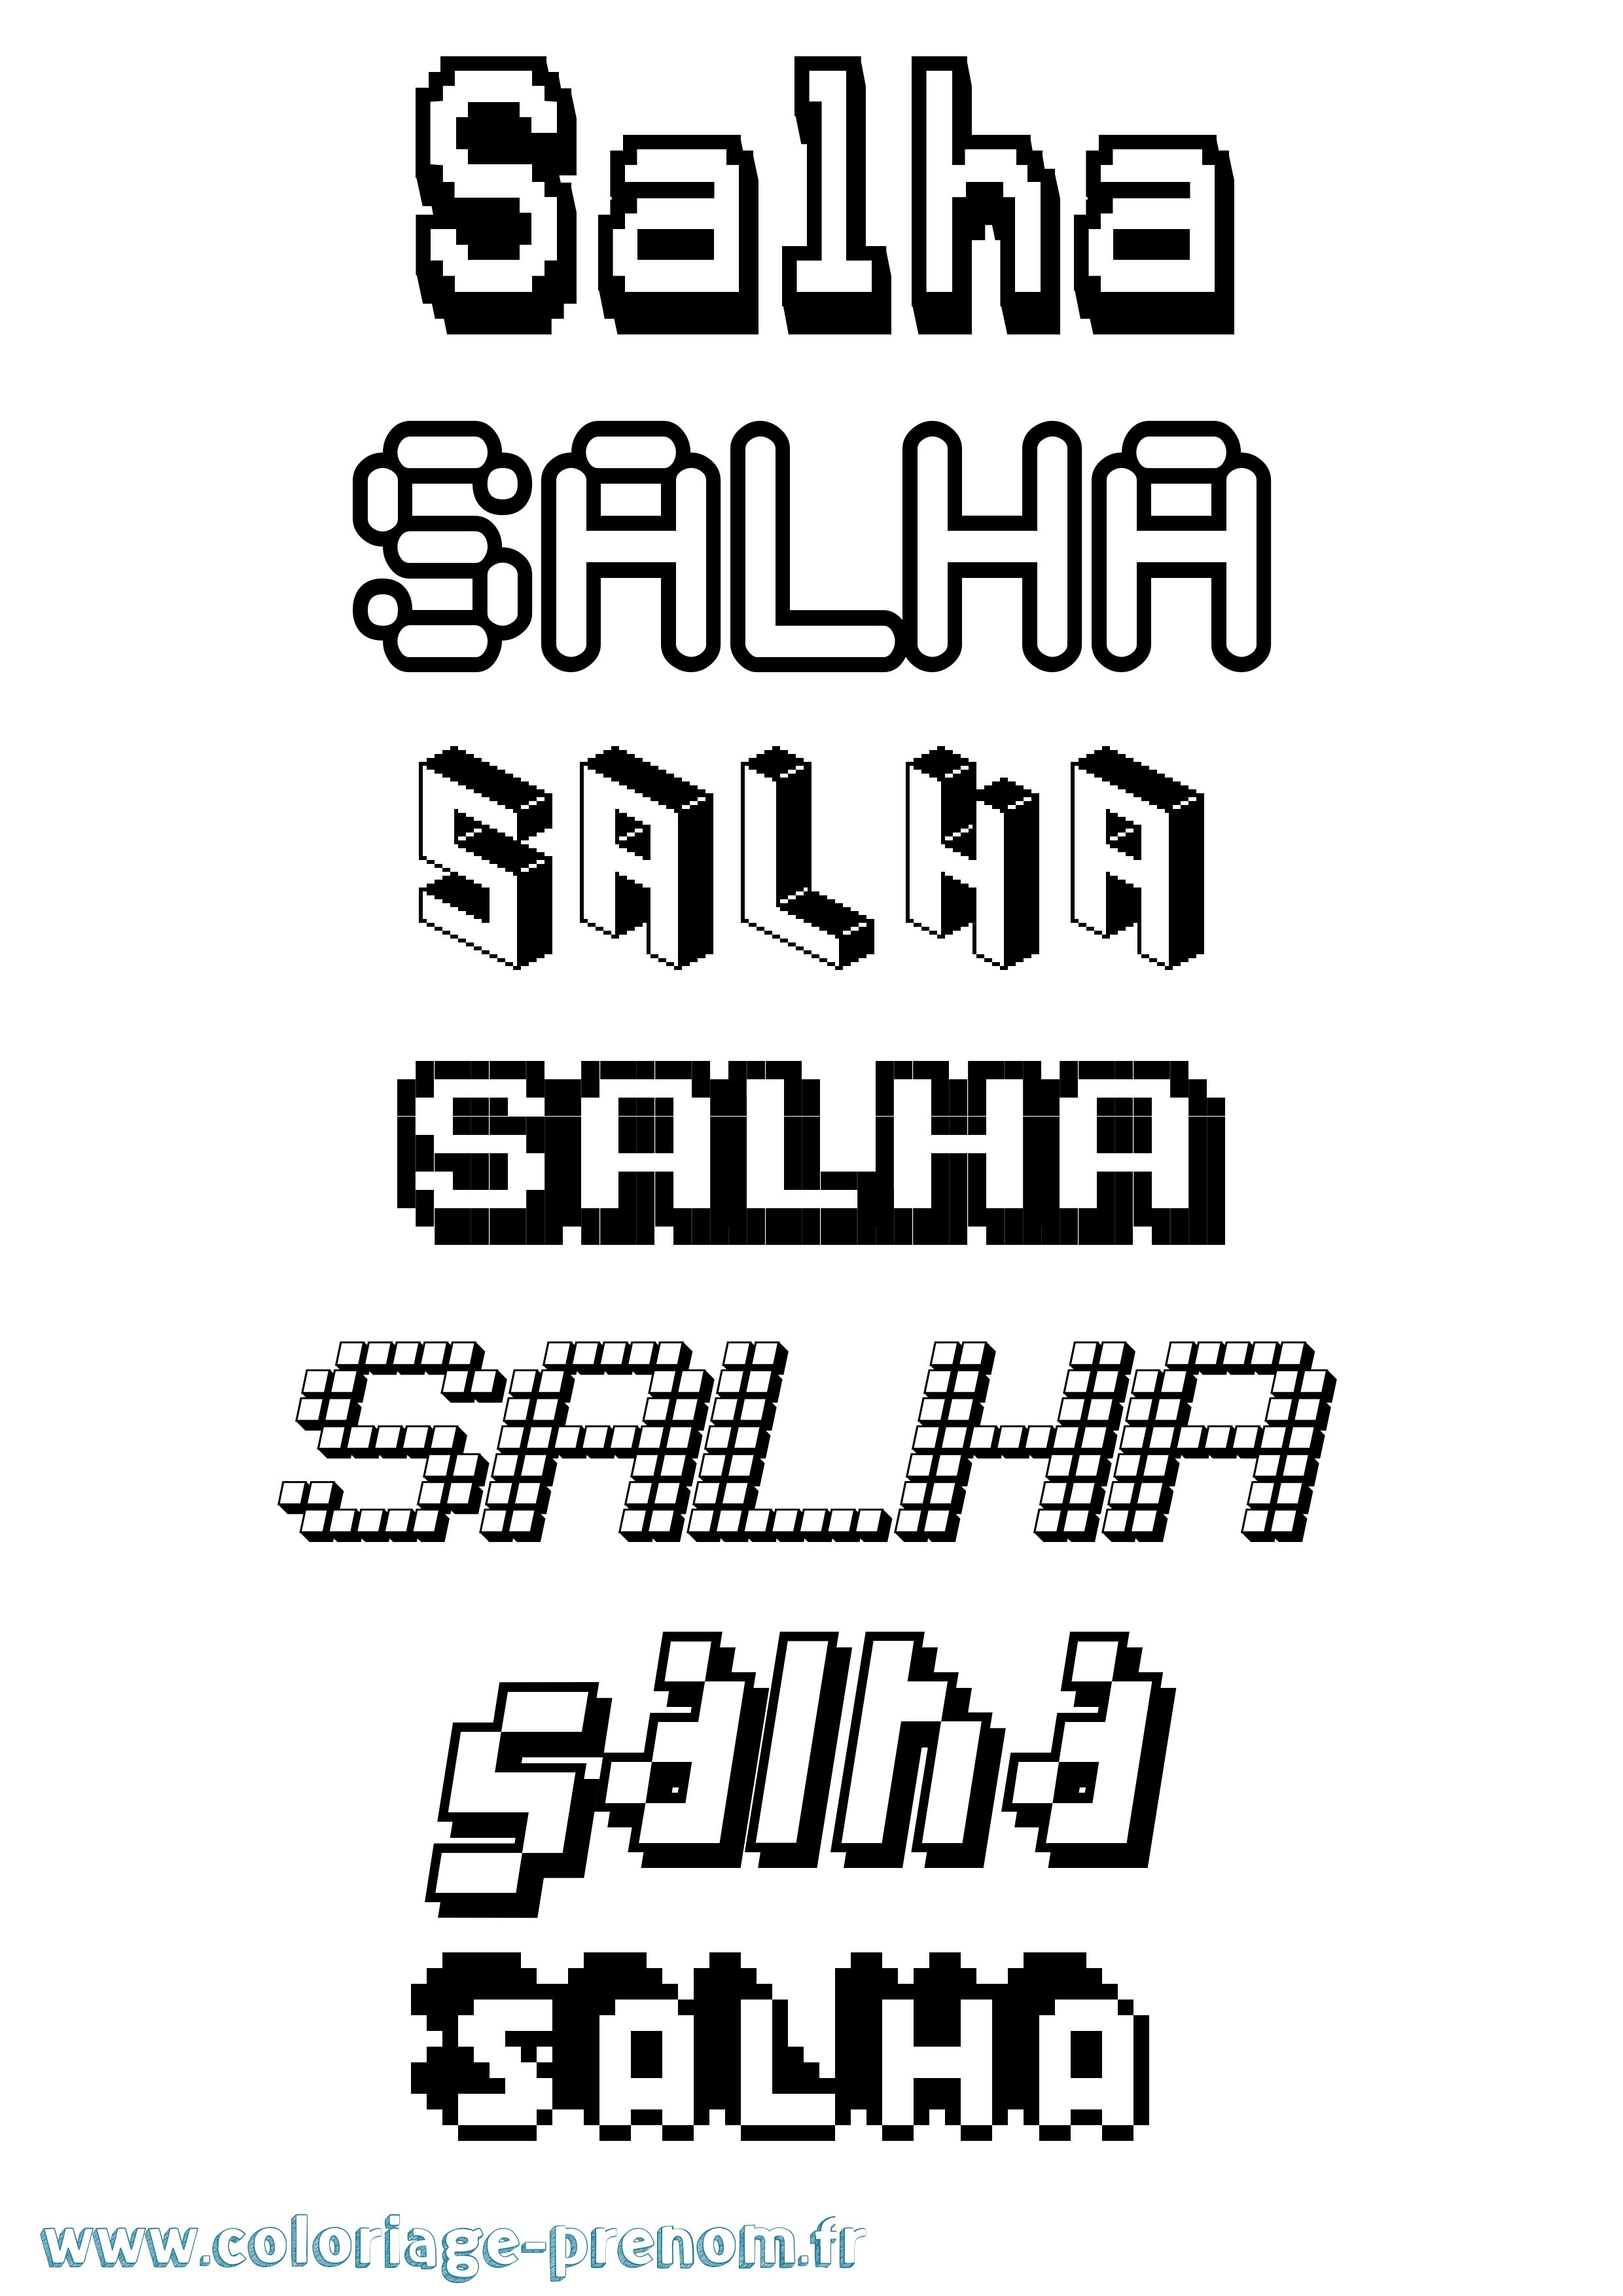 Coloriage prénom Salha Pixel